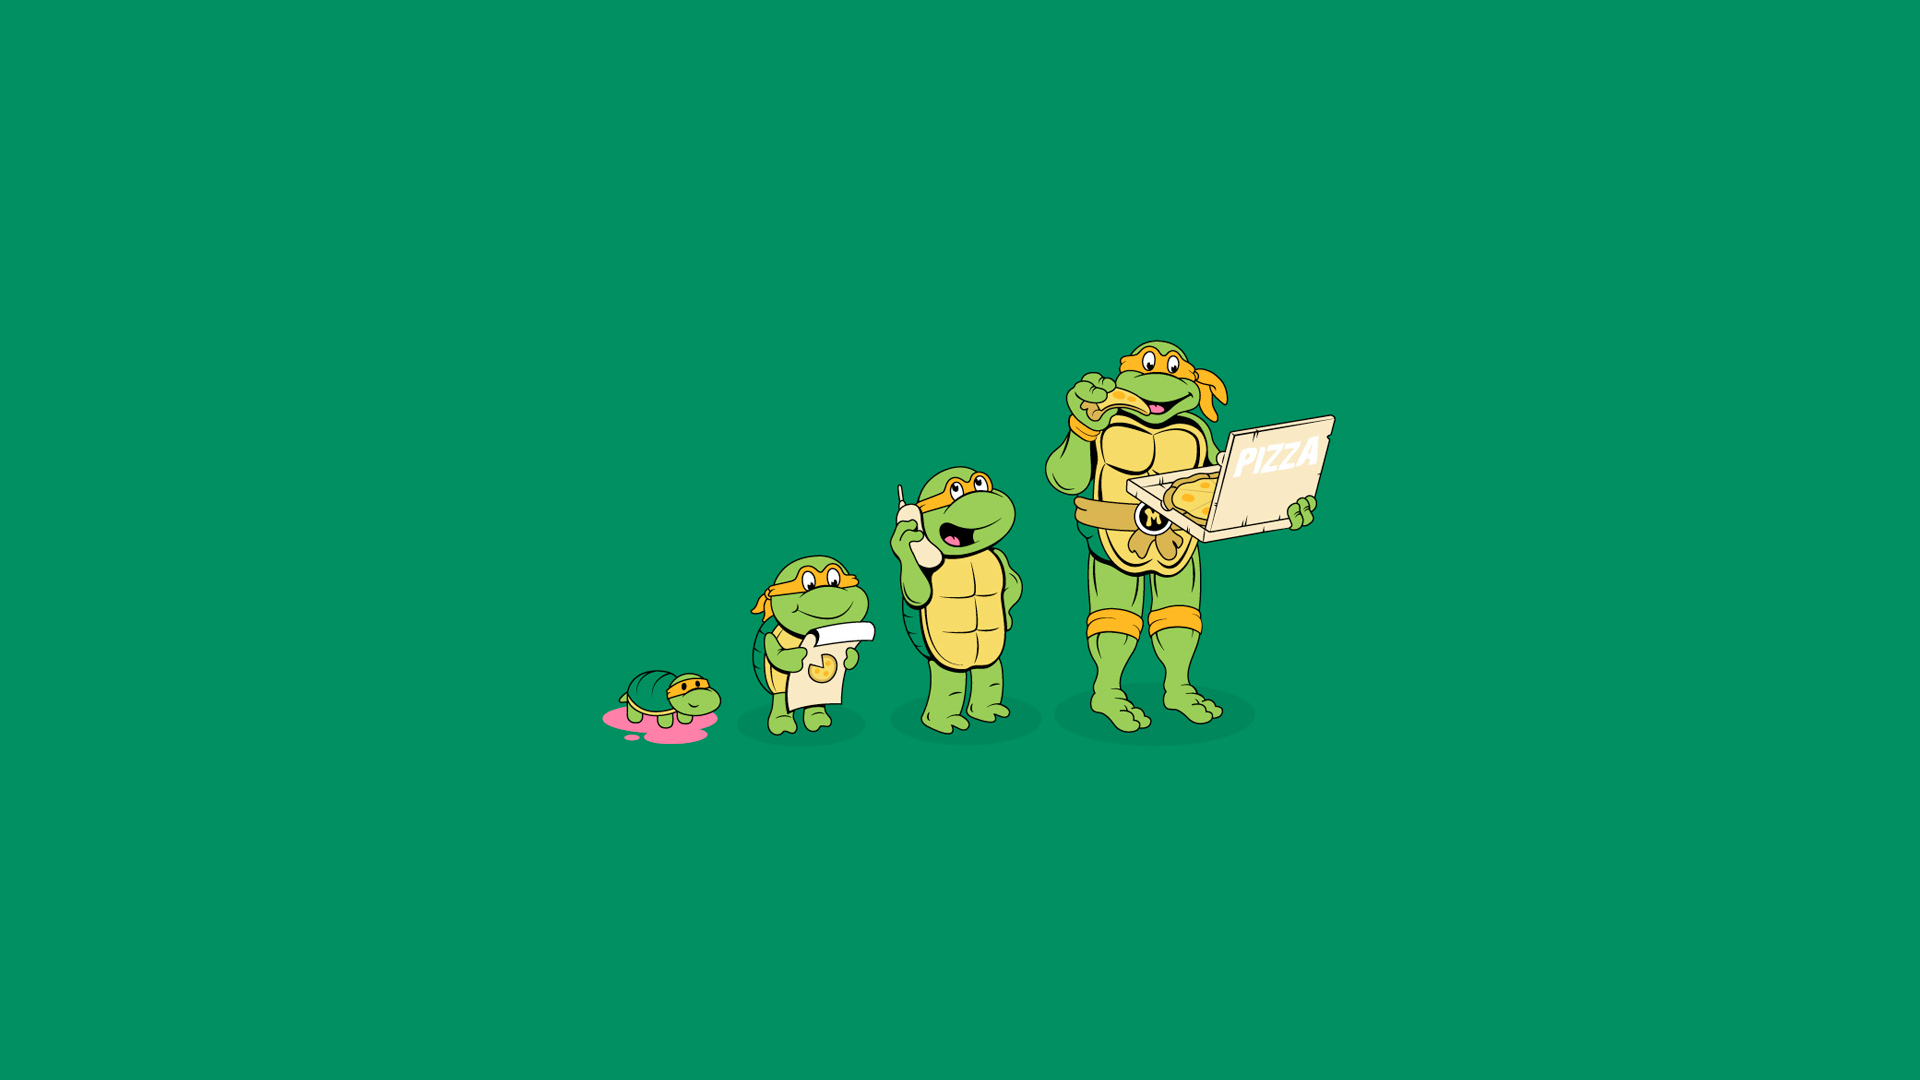 Michelangelo Pizza Green Turtle Humor Cartoons Ics Wallpaper